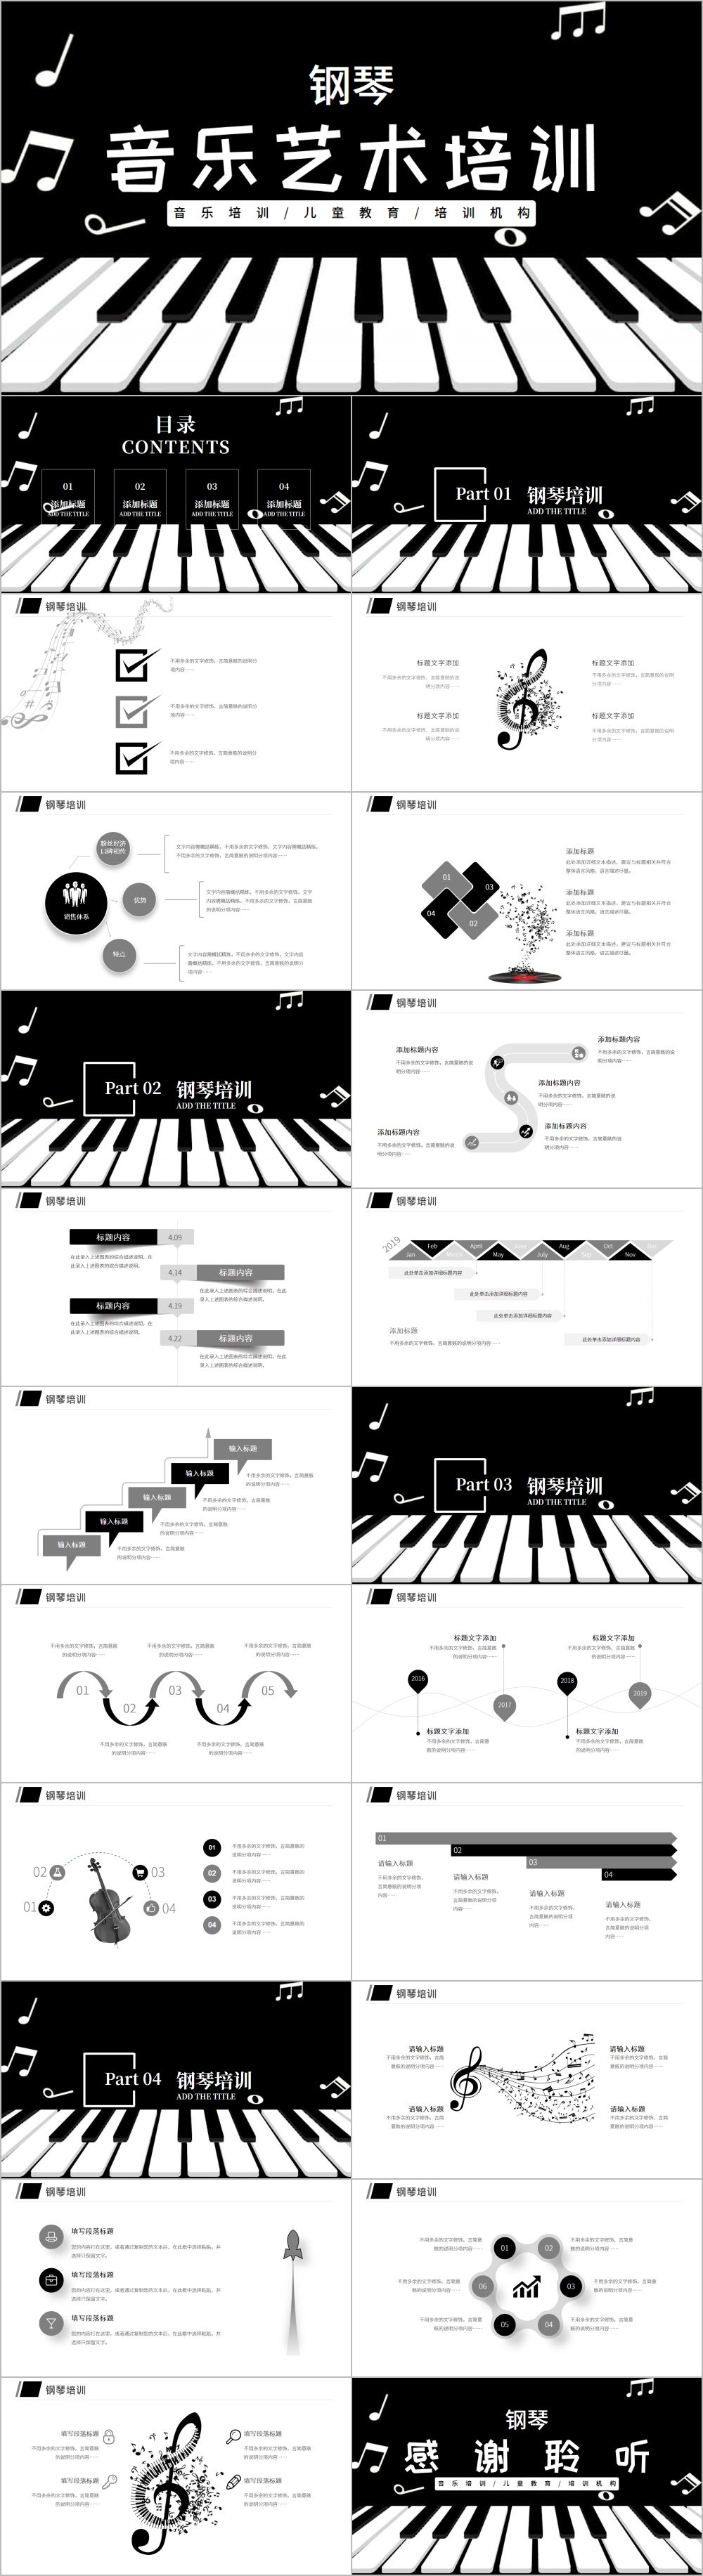 音乐艺术钢琴演奏培训机构宣传PPT模板